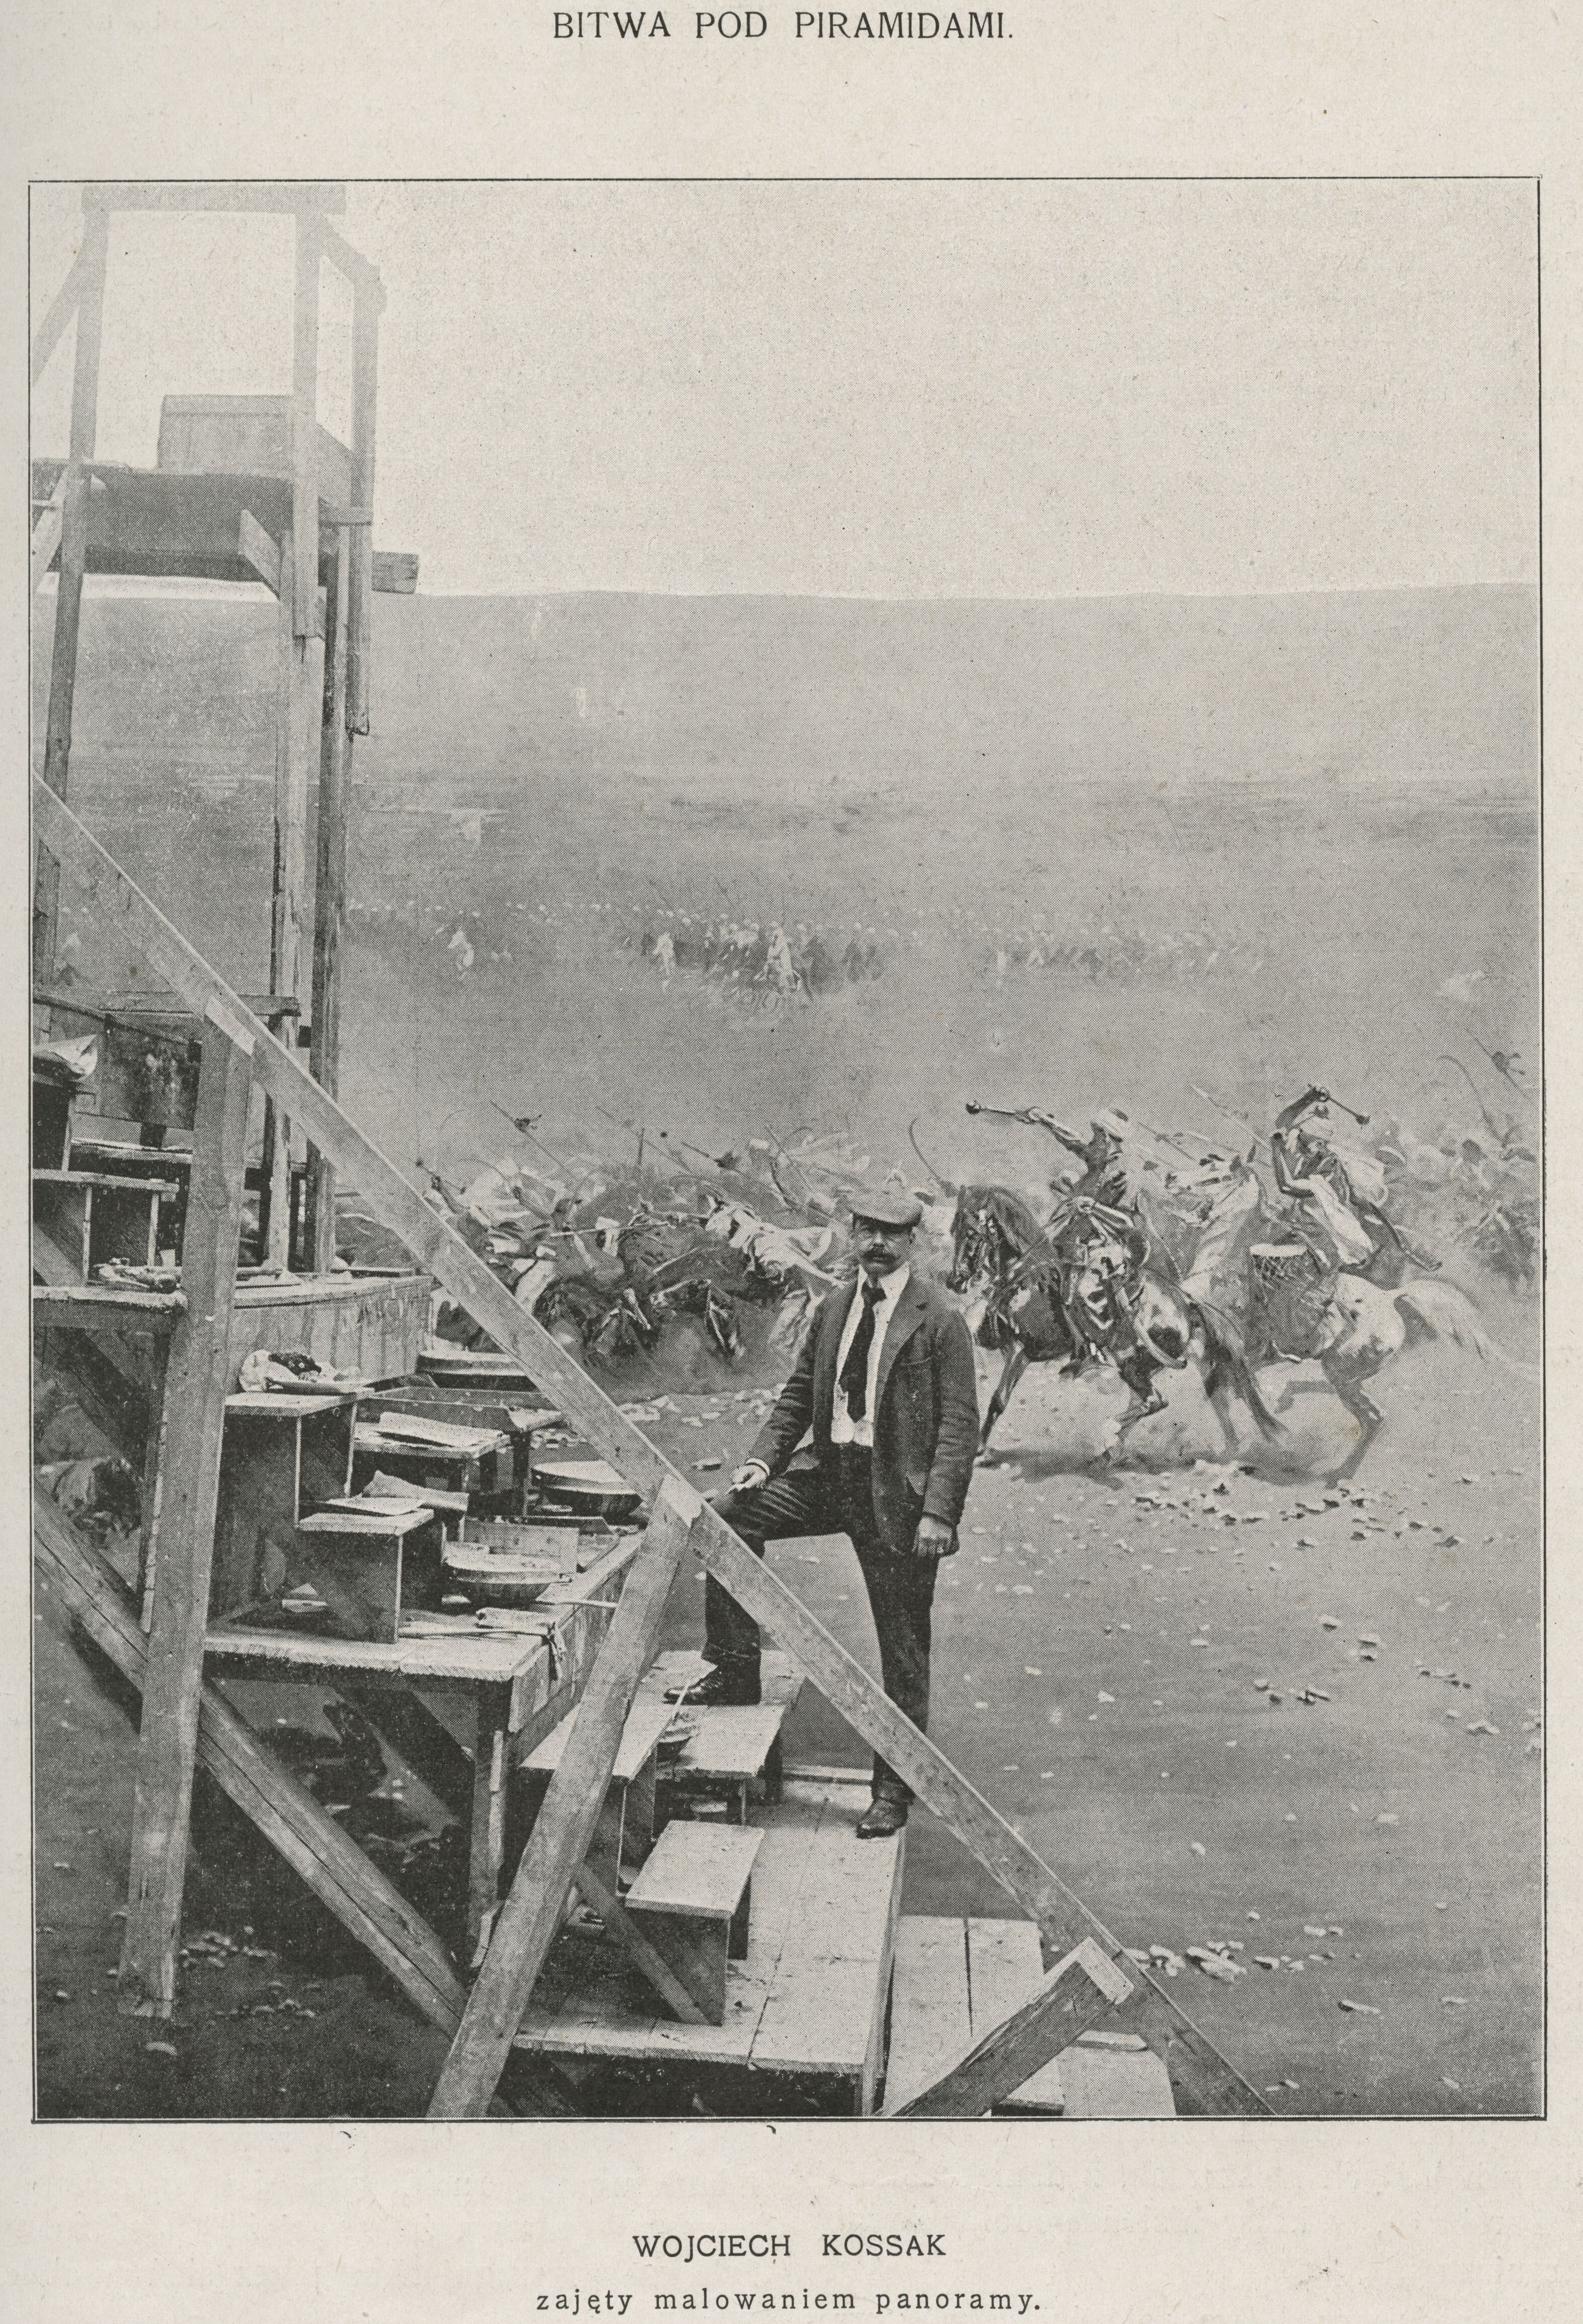 Wojciech Kossak podczas malowania panoramy "Bitwa pod piramidami", 1901 rok, fot. archiwalna